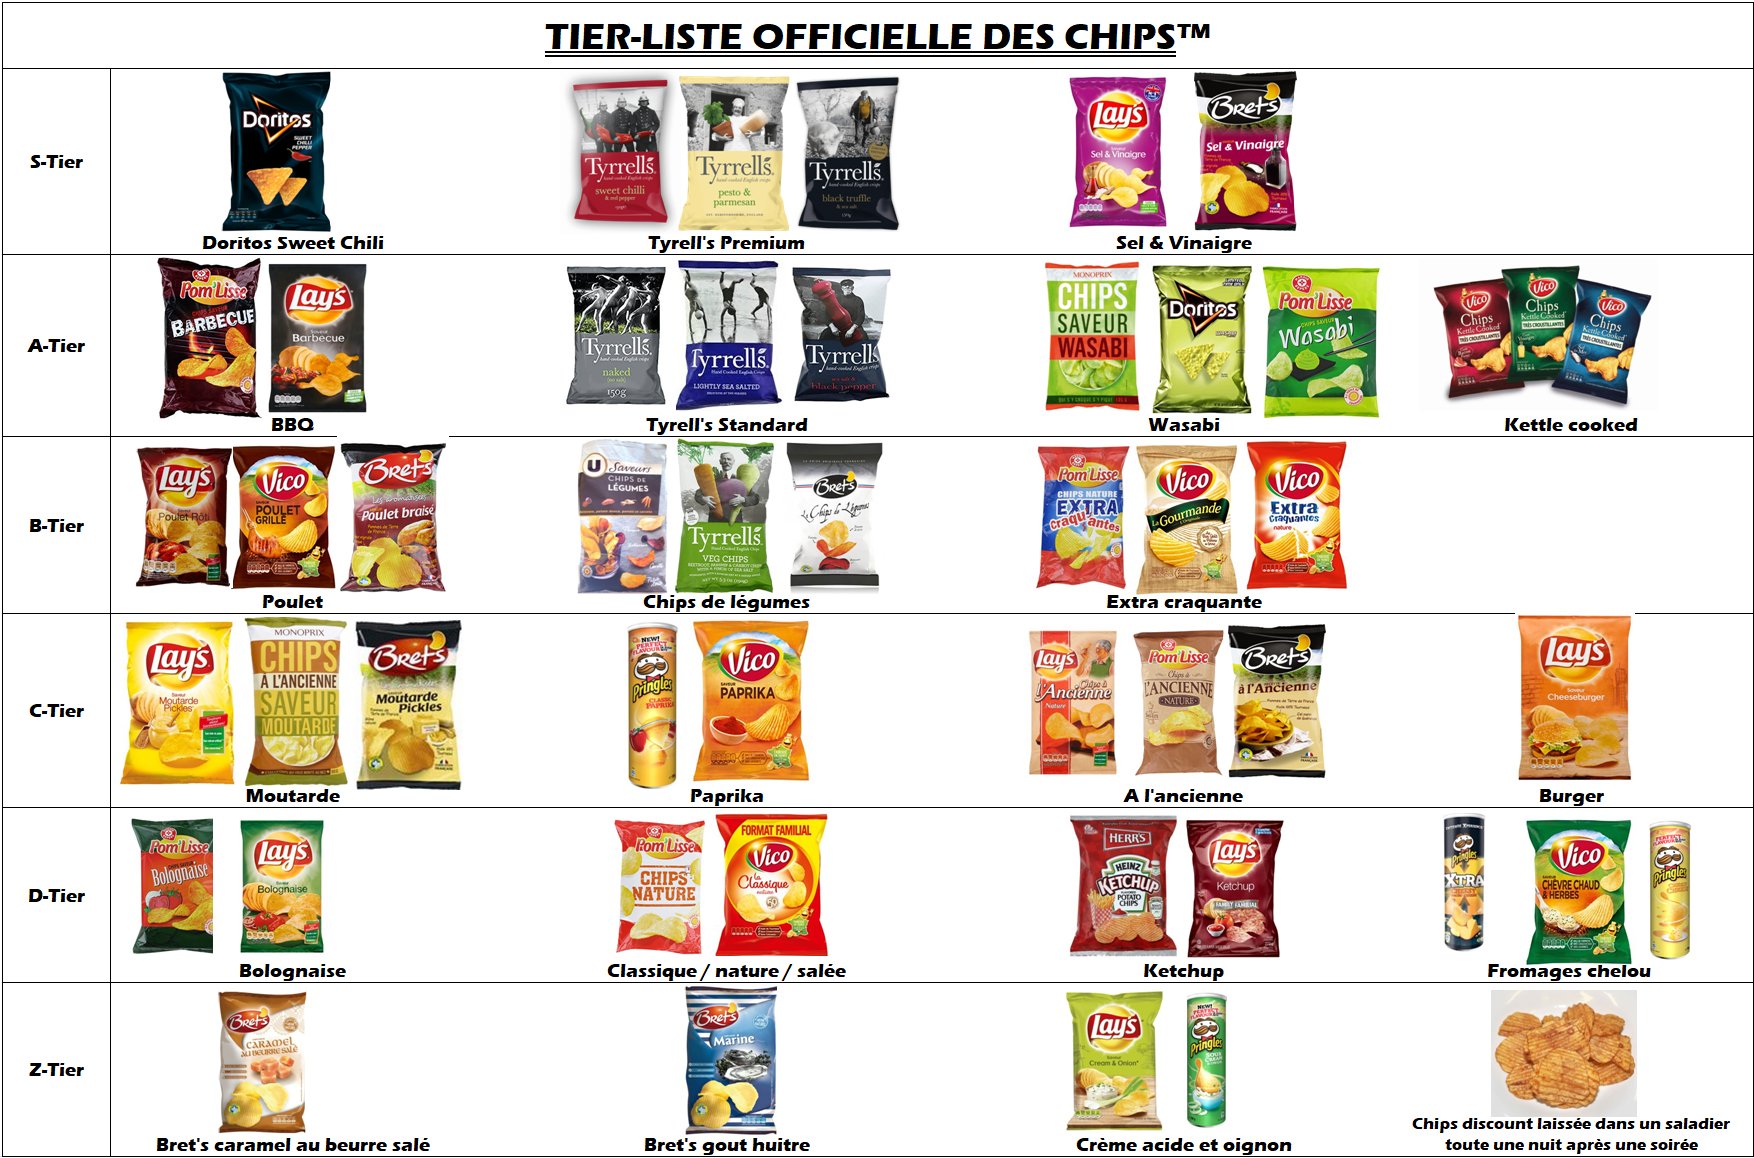 voici la tier-list officielle et définitive des chips. 